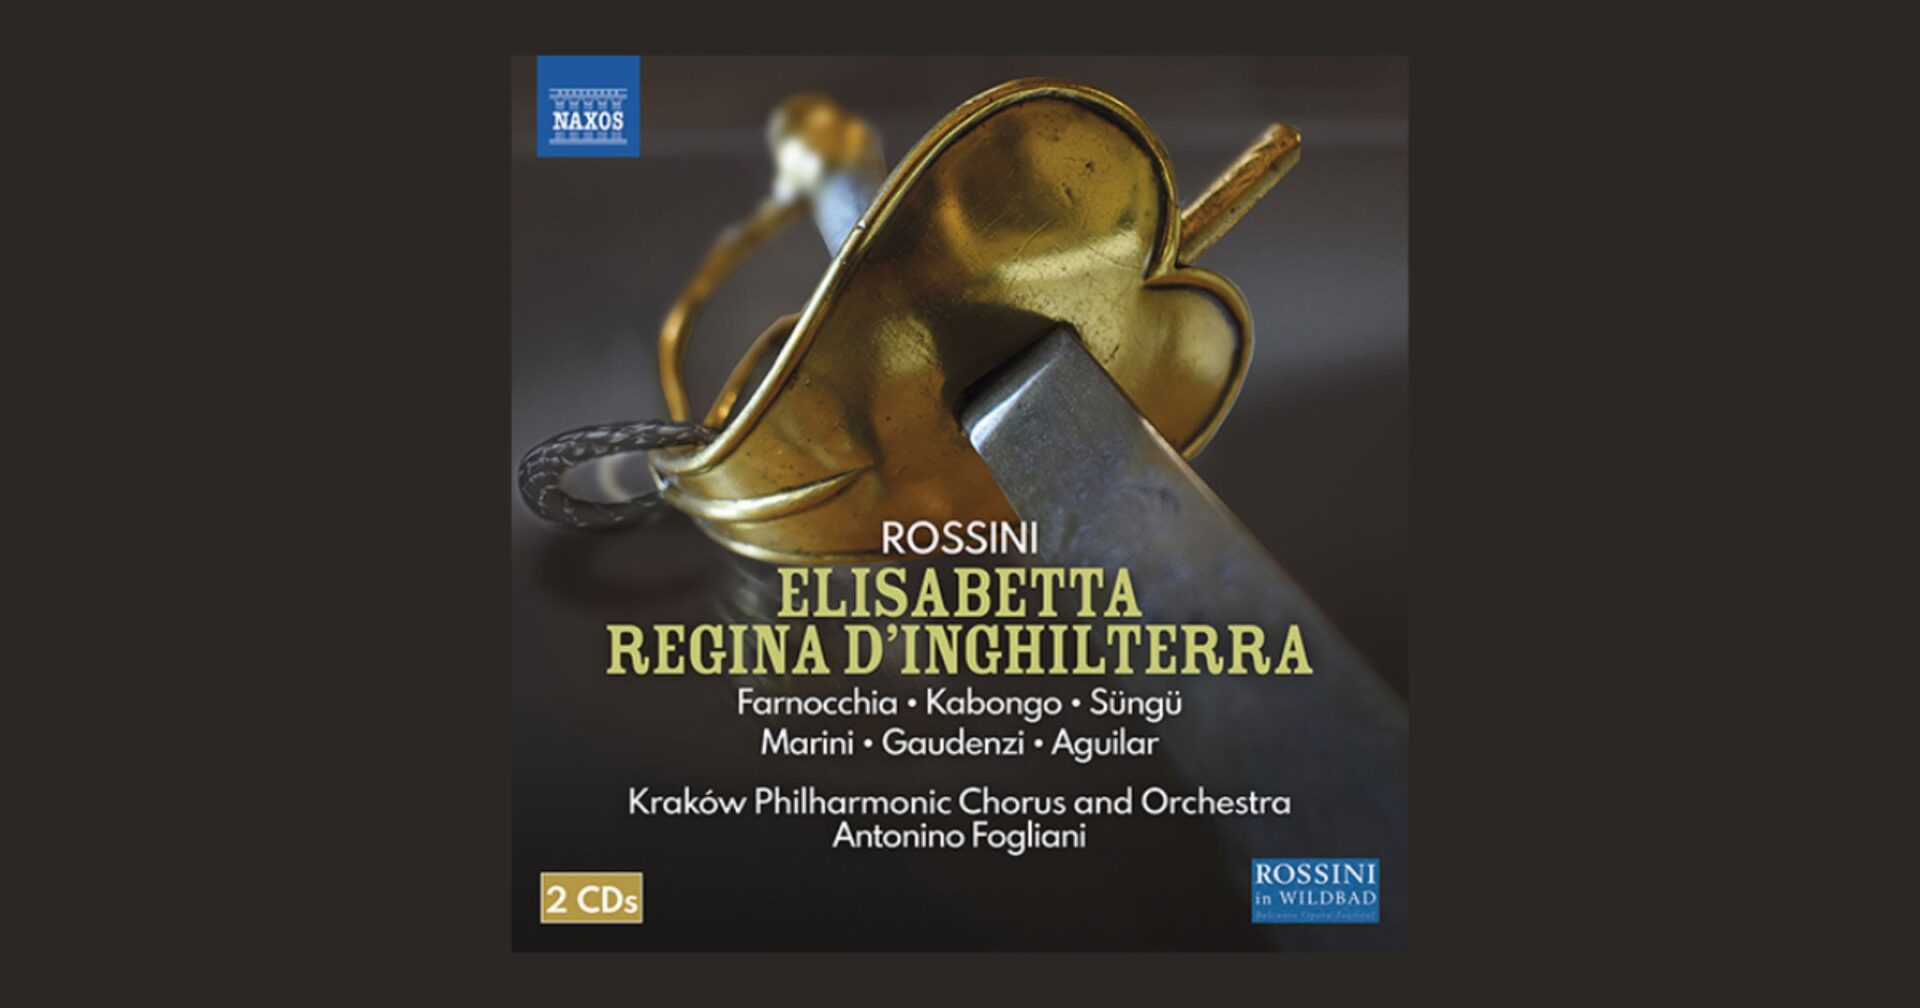 Okładka płyty „Elisabetta, regina d'Inghilterra” Gioachino Rossiniego firmy Naxos © archiwum prywatne